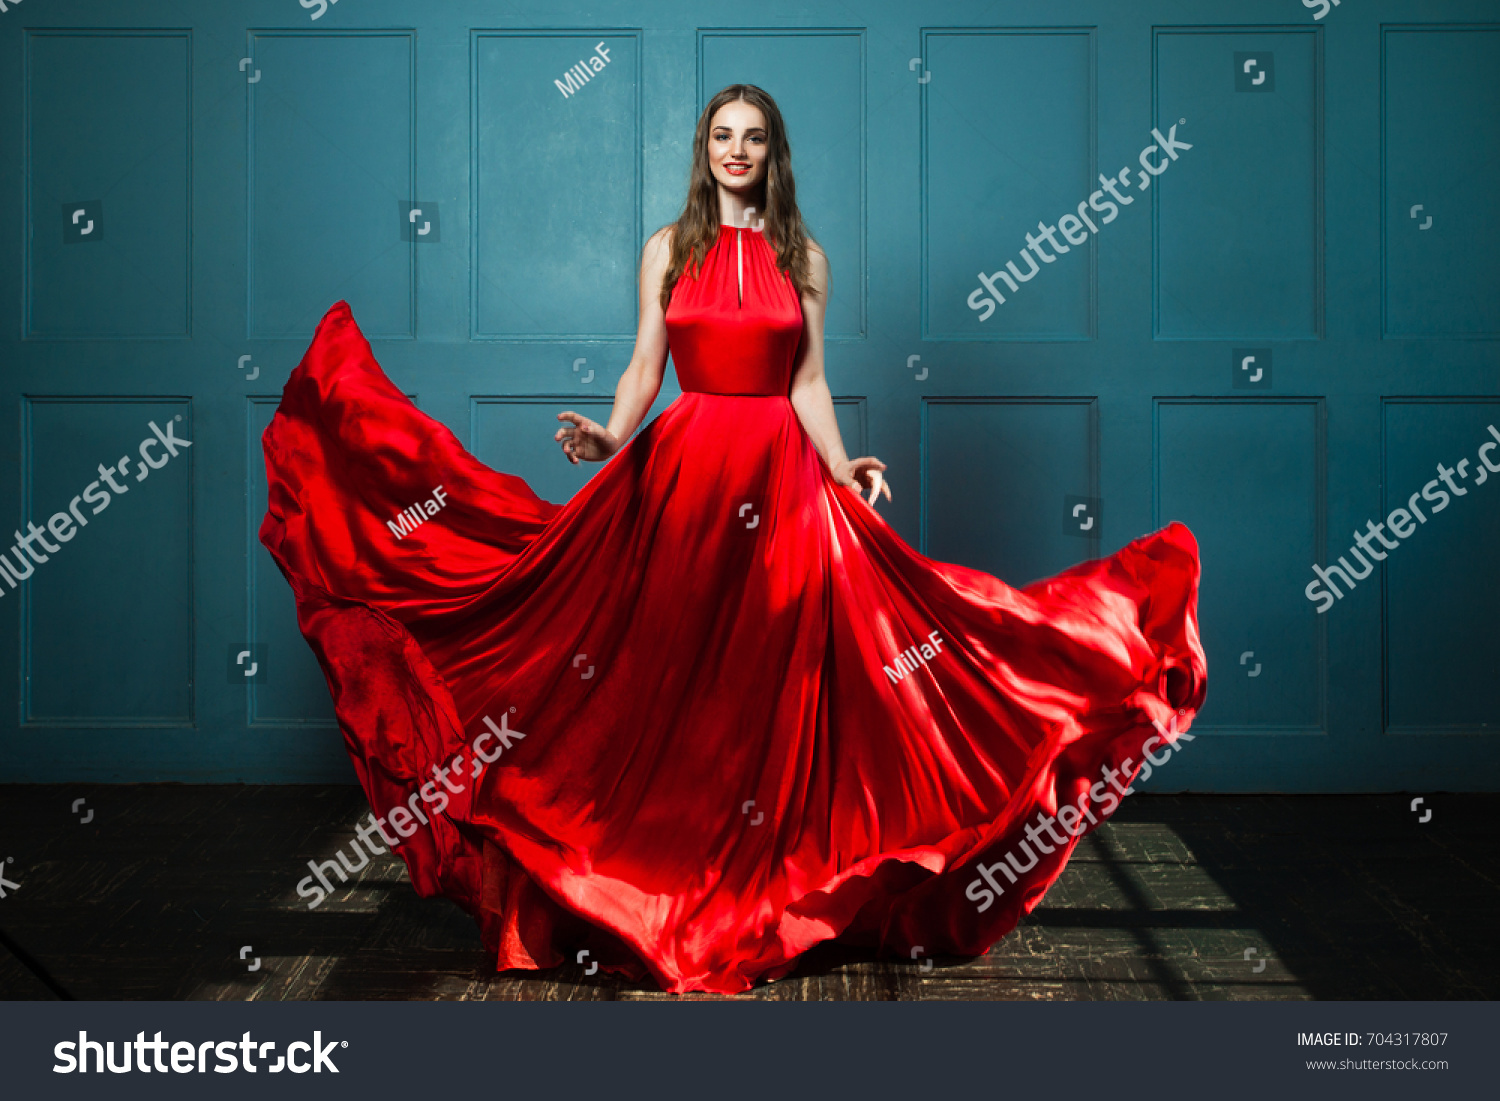 Glamorous Woman Fashionable Red Dress Beautiful Stock Photo 704317807 ...